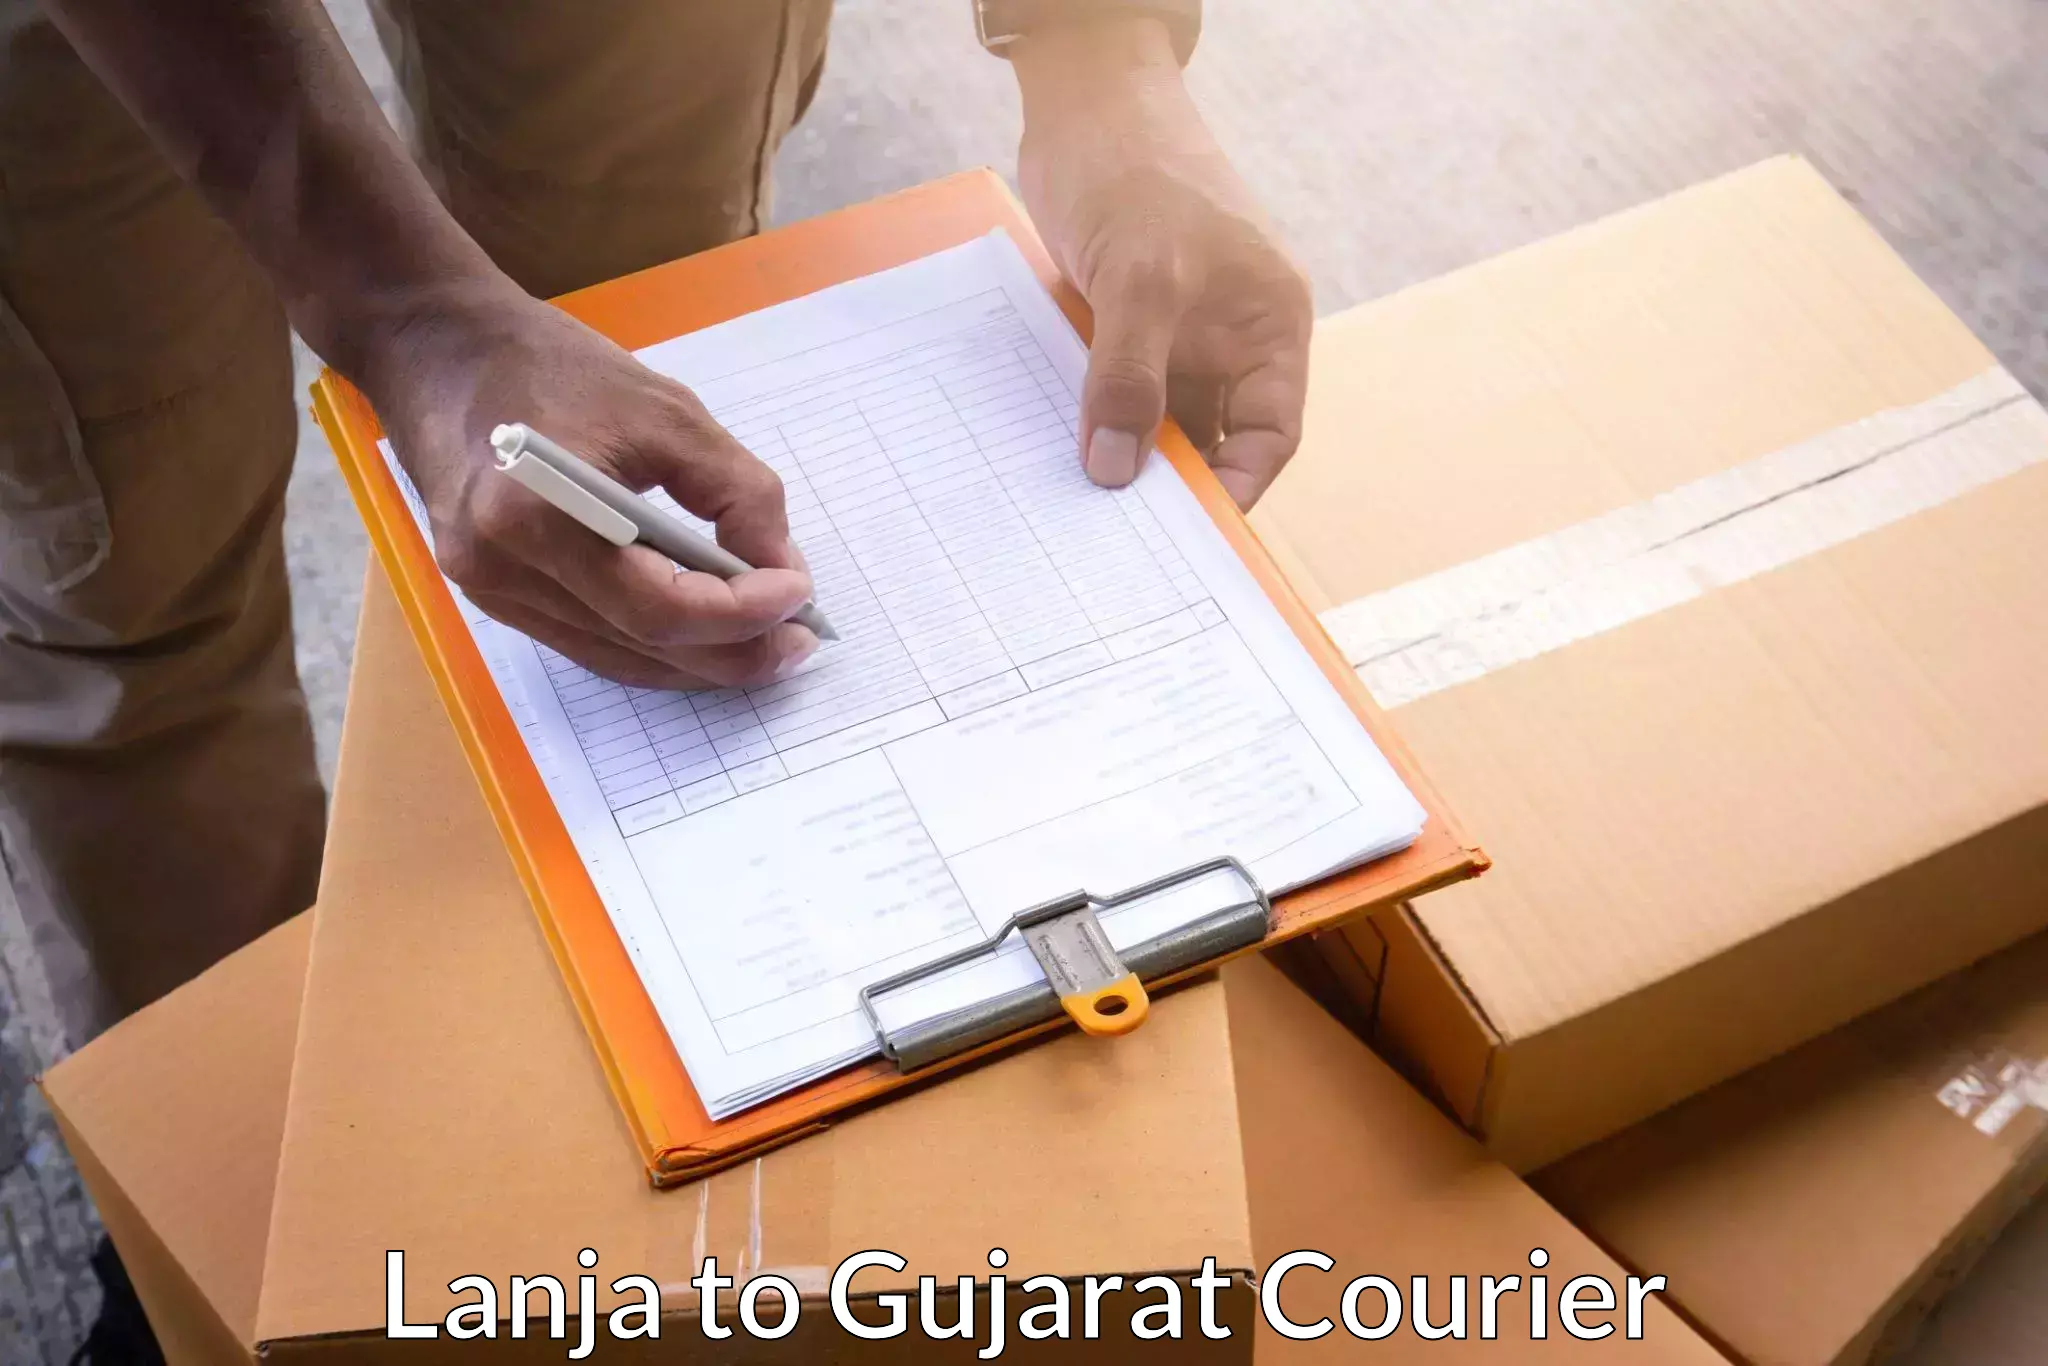 Efficient cargo handling Lanja to Gujarat